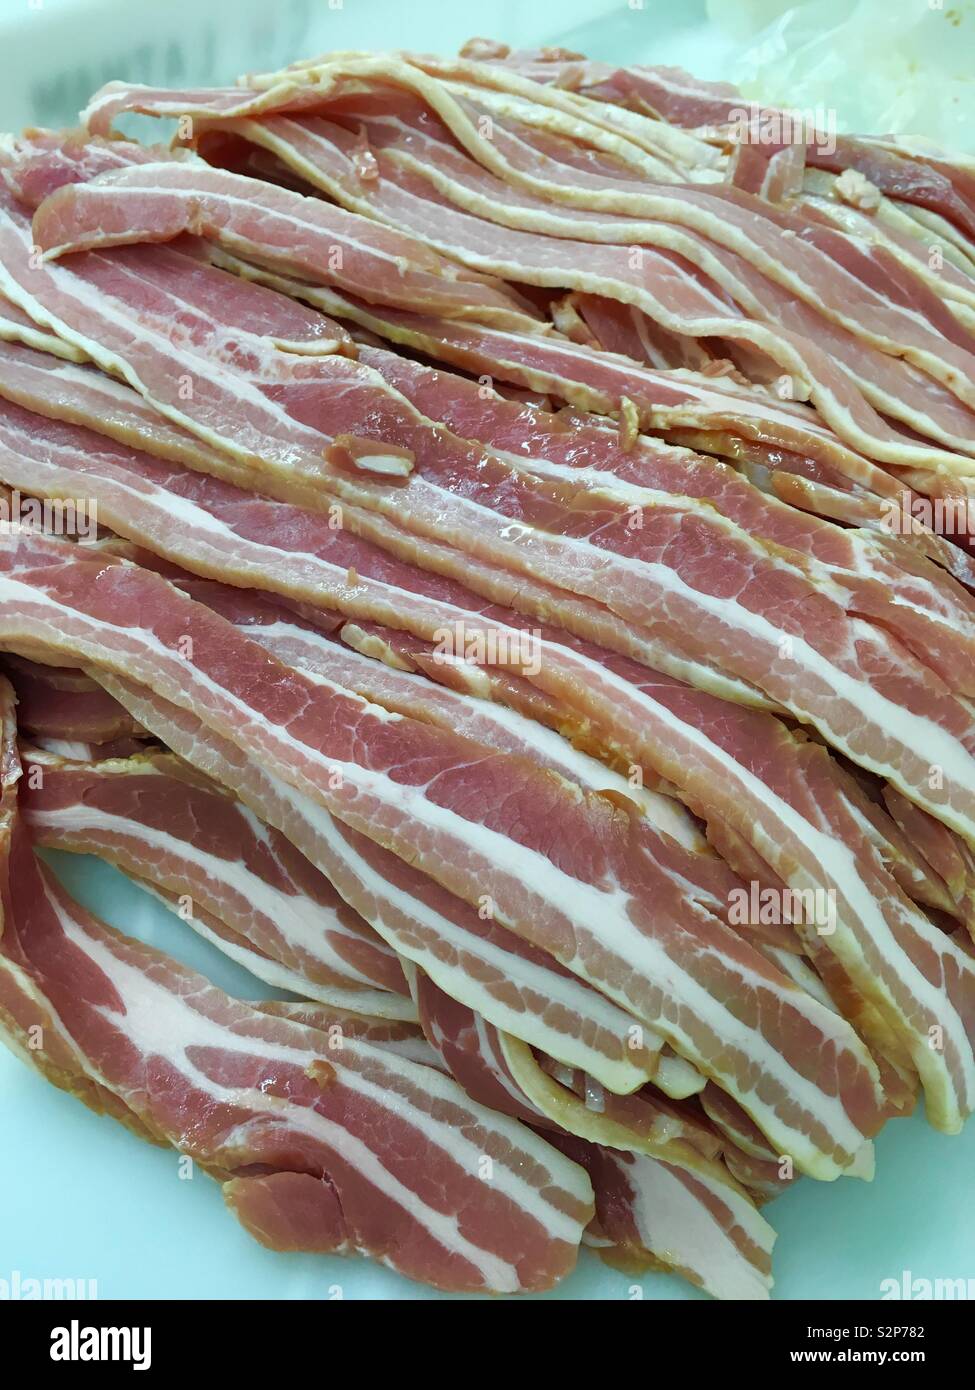 Streaky bacon Stock Photo